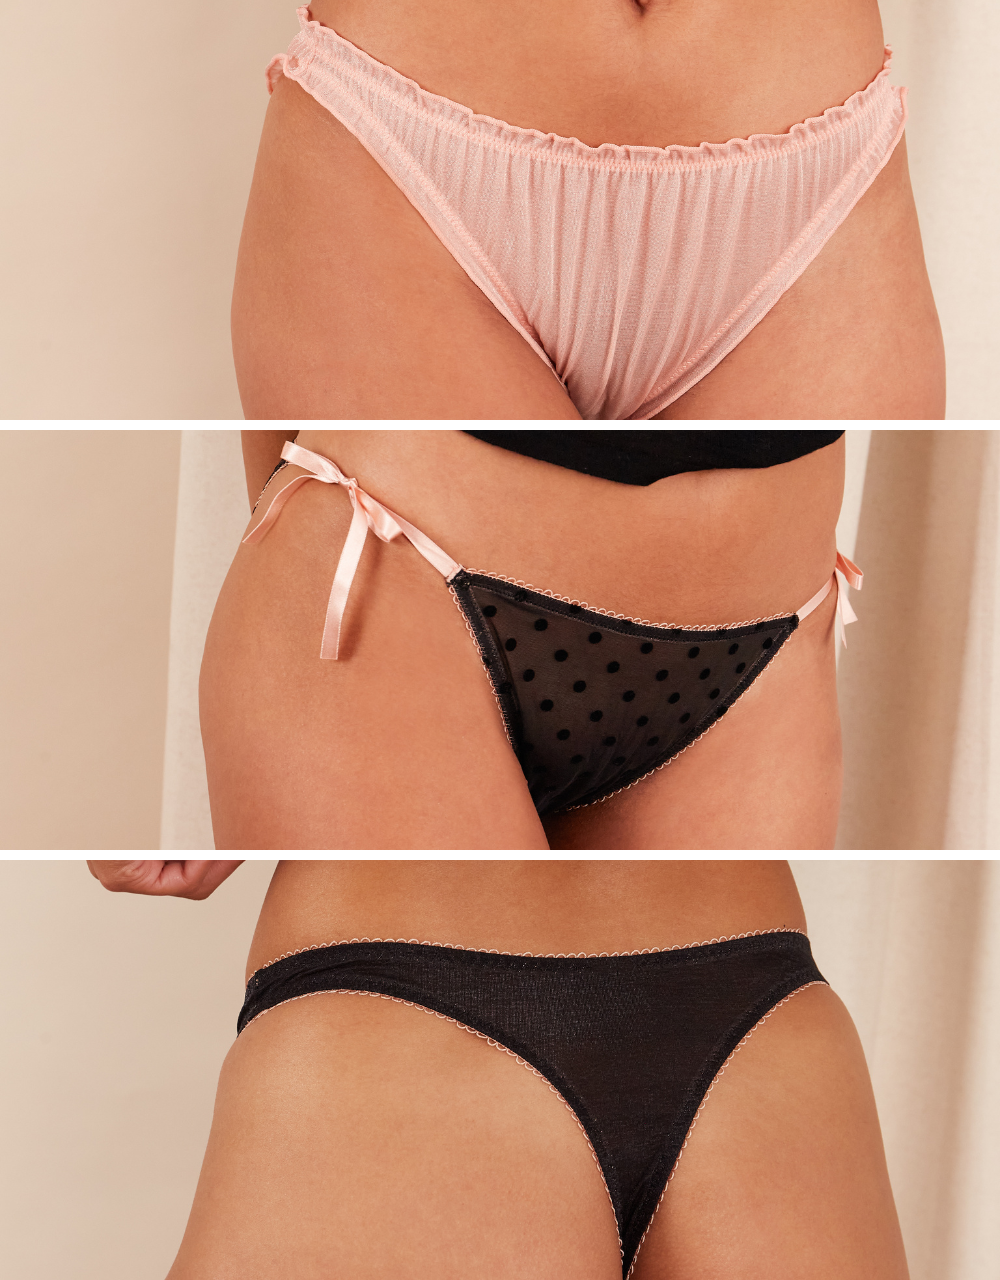 https://www.girlsinparis.com/images/lingerie/soutien-gorge-avec-armatures-melrose_5564_02_a.jpg